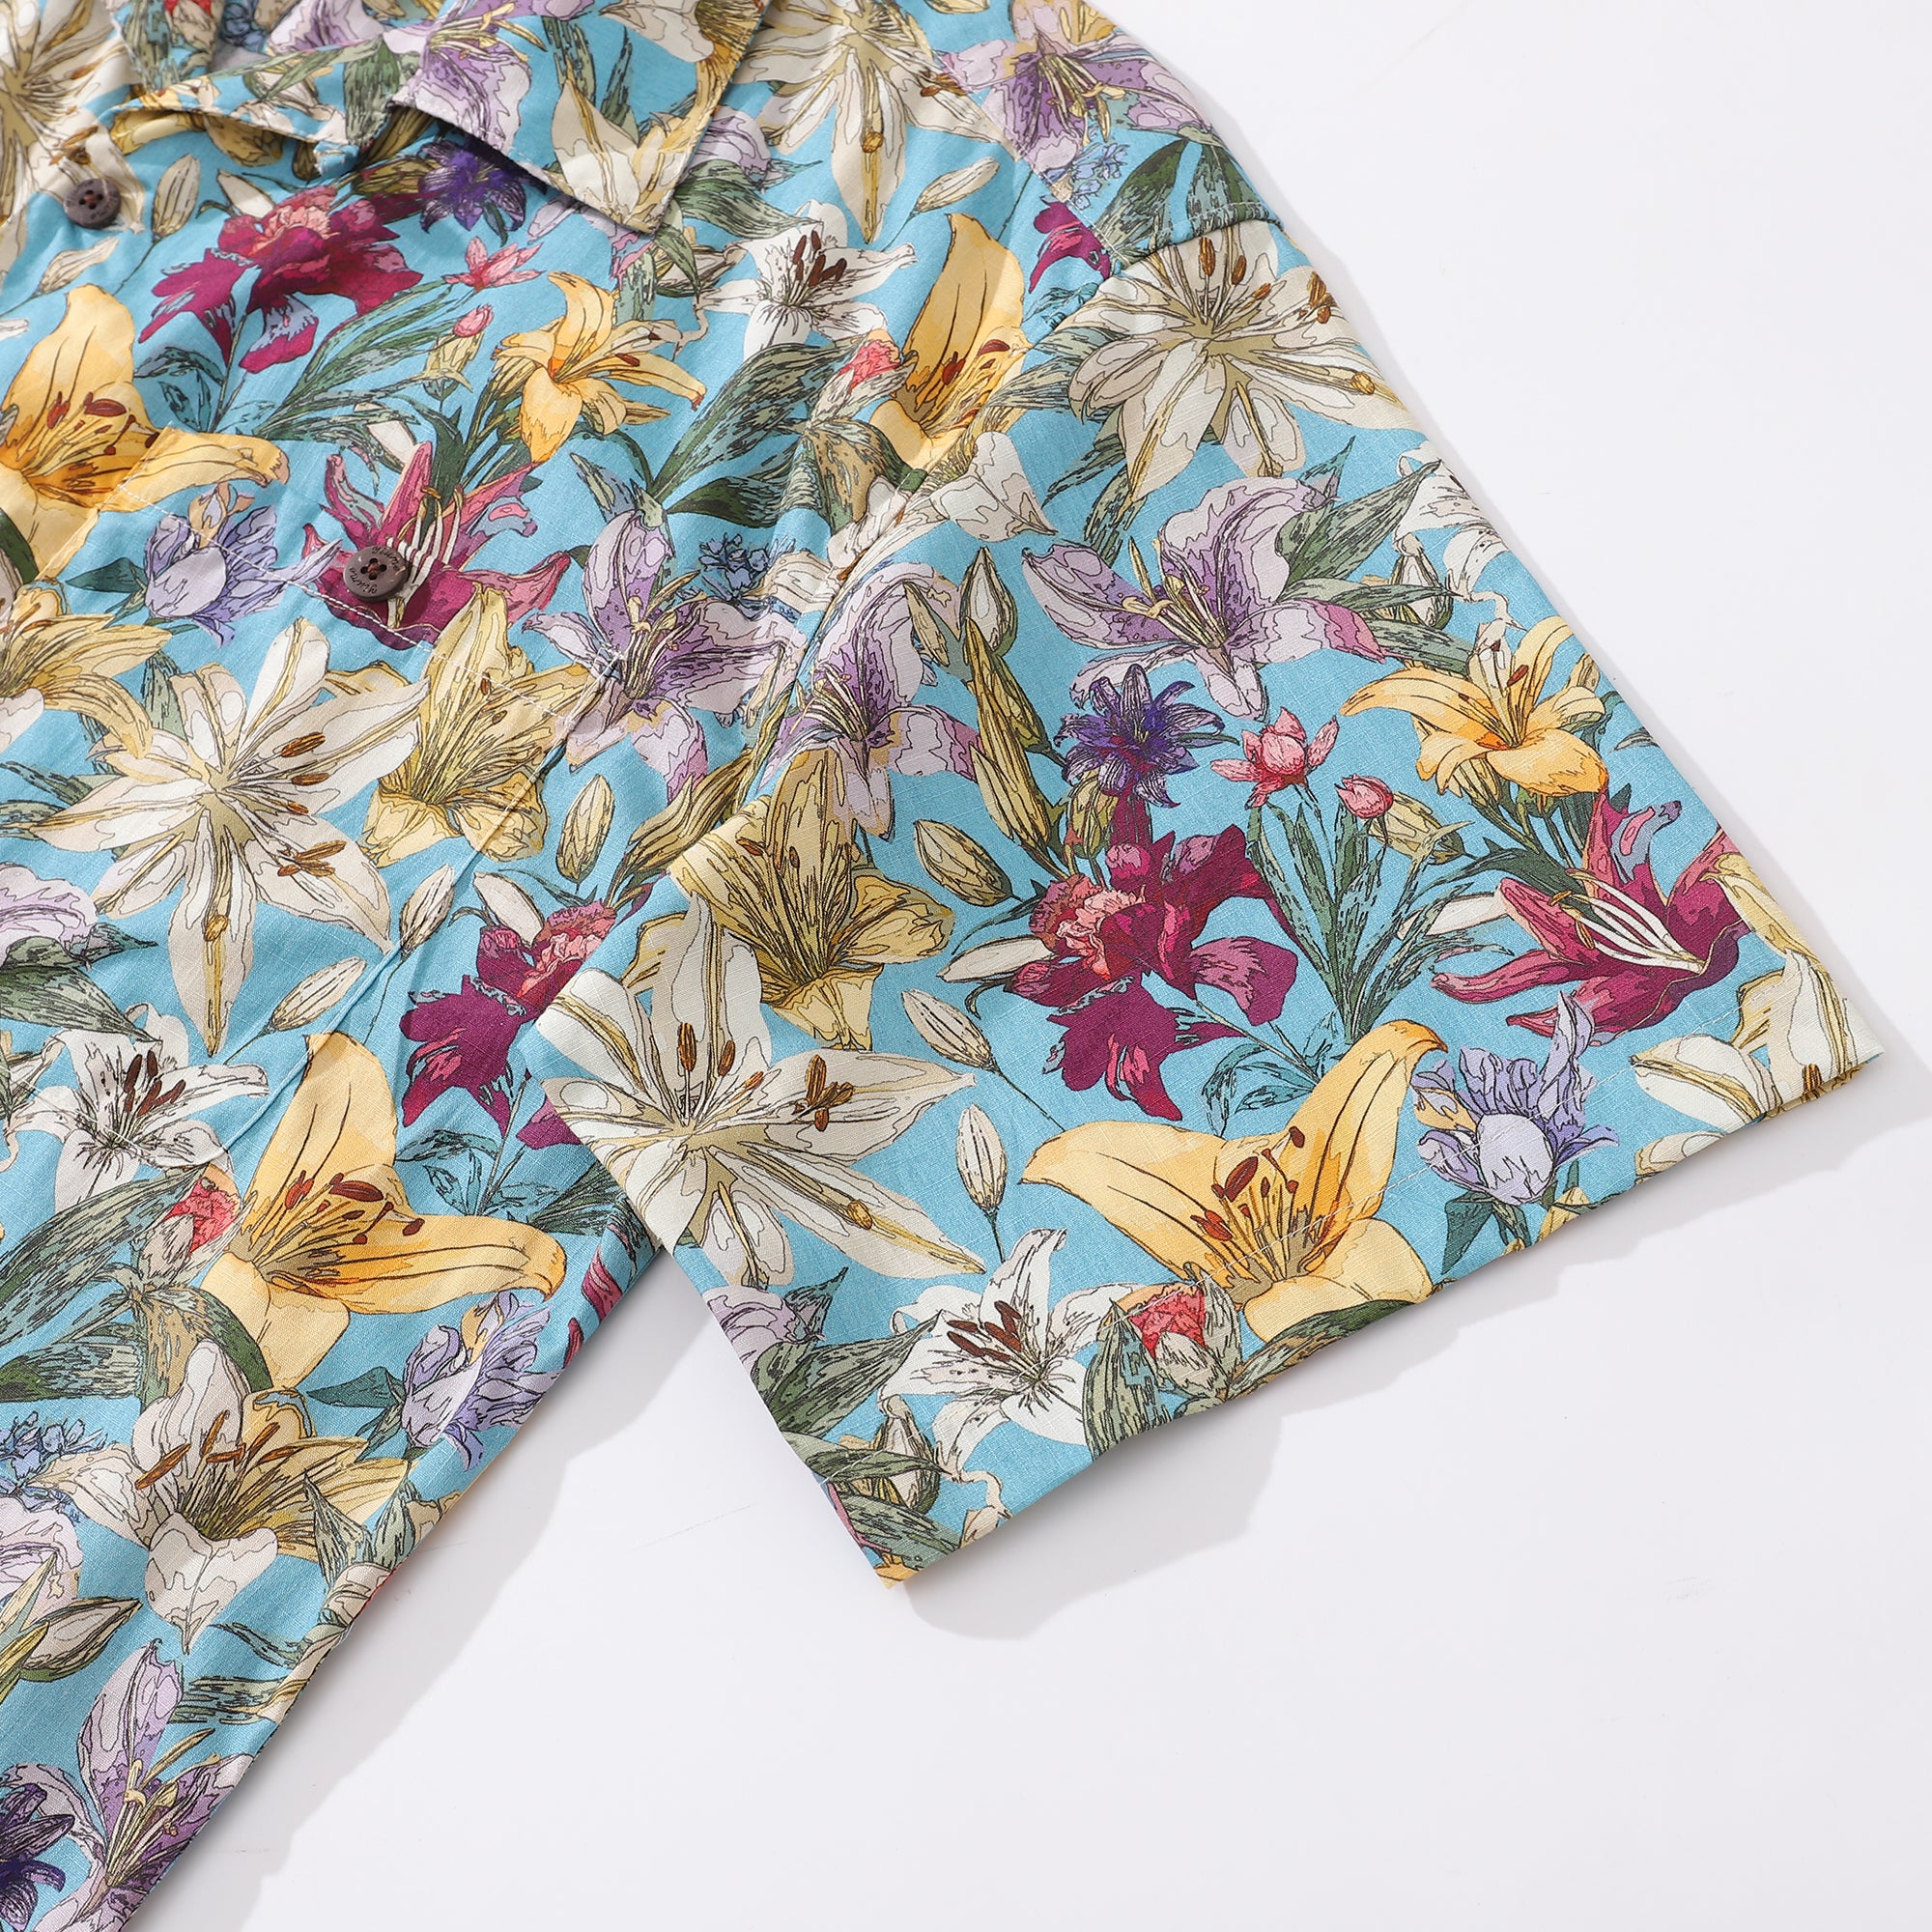 Hawaiian Shirt For Men Retro Blooms Print Shirt Camp Collar 100% Cotton